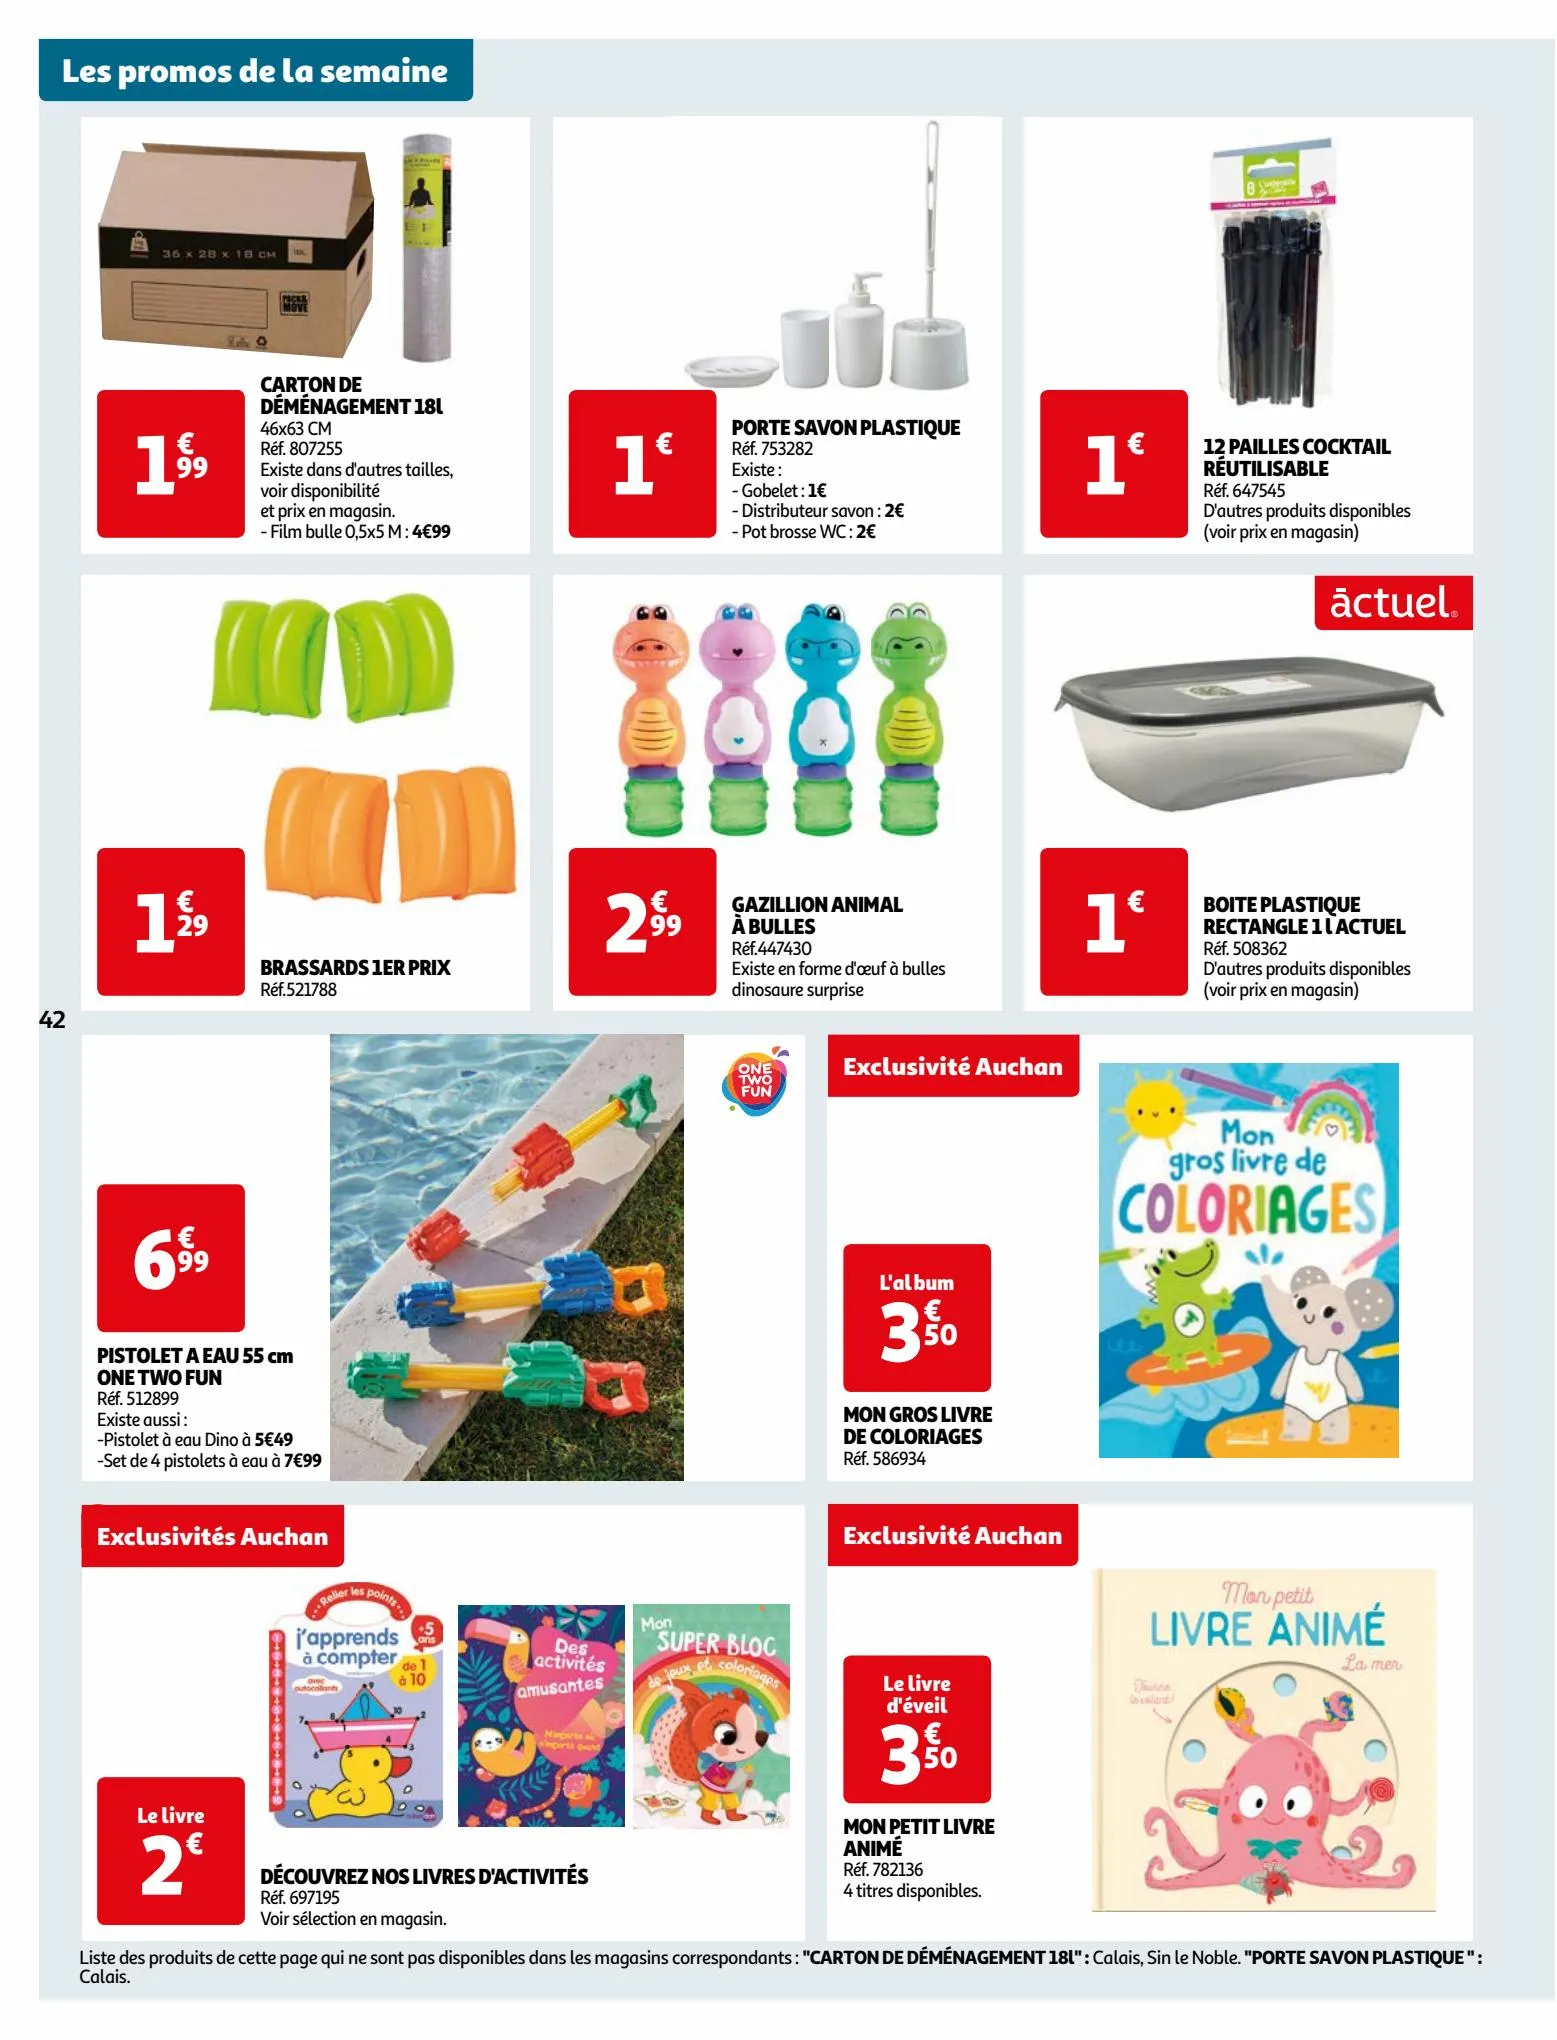 Catalogue Vos produits laitiers à petits prix !, page 00042